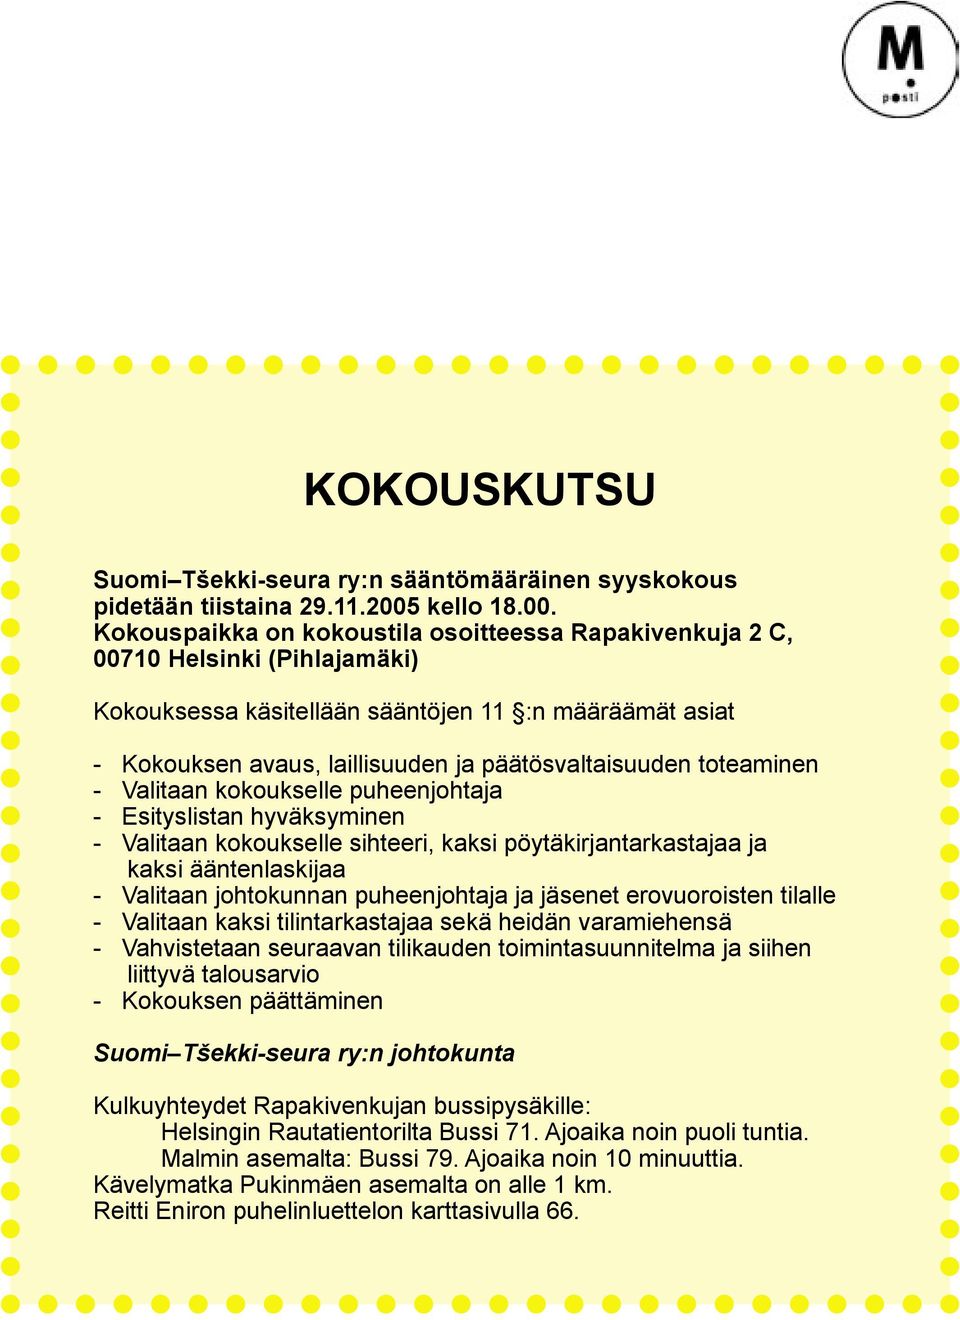 Kokouspaikka on kokoustila osoitteessa Rapakivenkuja 2 C, 00710 Helsinki (Pihlajamäki) Kokouksessa käsitellään sääntöjen 11 :n määräämät asiat - Kokouksen avaus, laillisuuden ja päätösvaltaisuuden